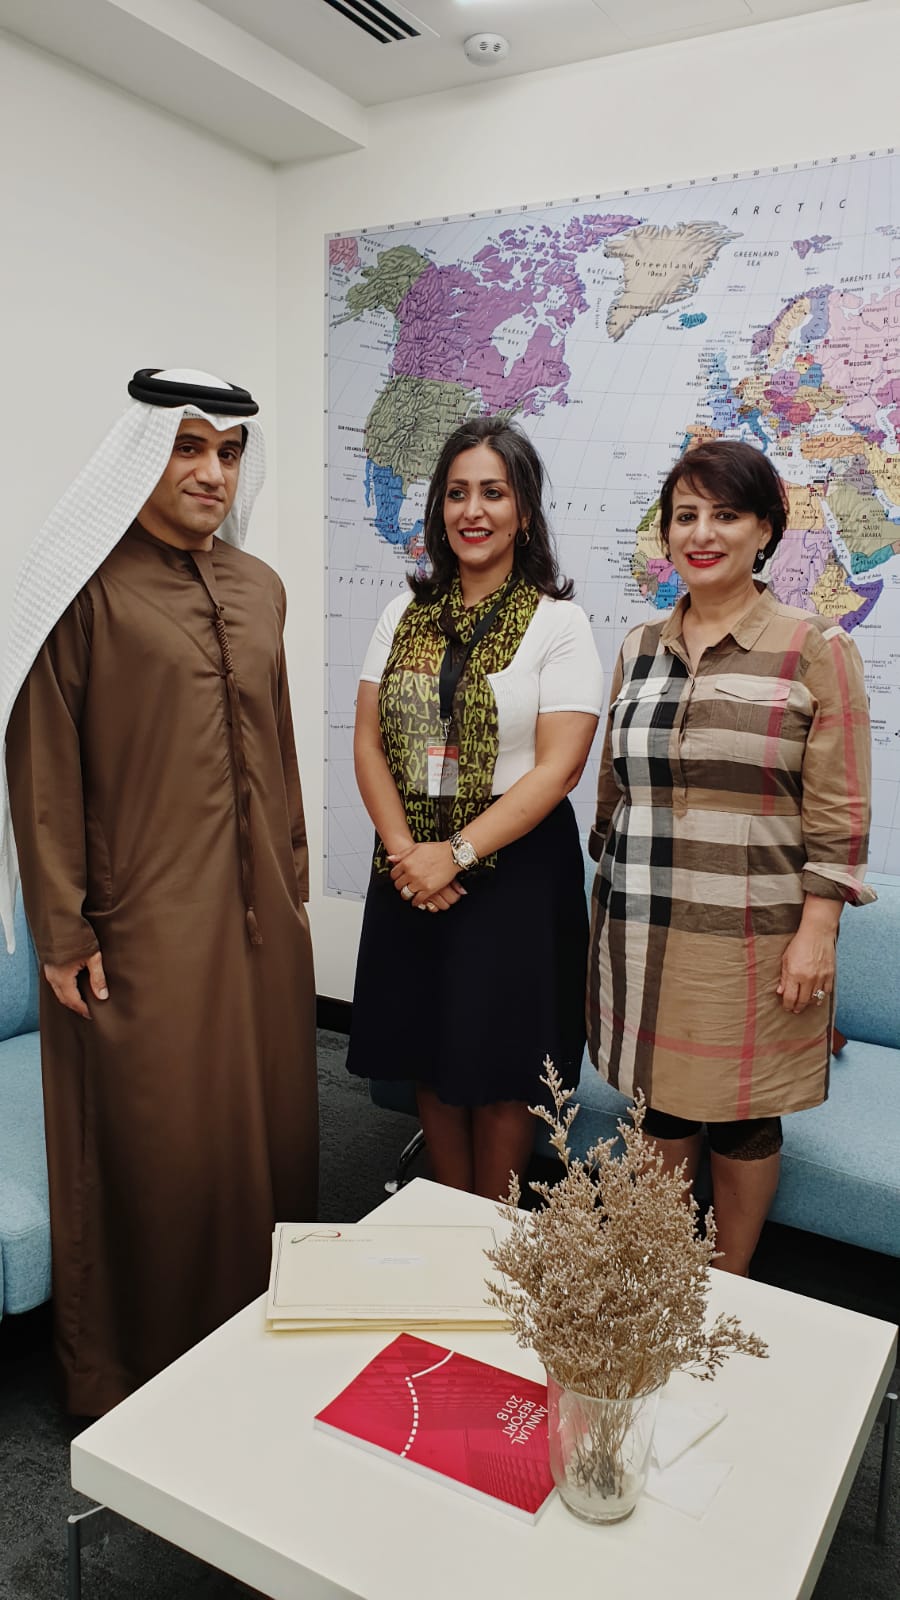 مدير الشؤون التنفيذية في العربية للطيران تسلم دعوة المشاركة في معرض الكويت للطيران 2020